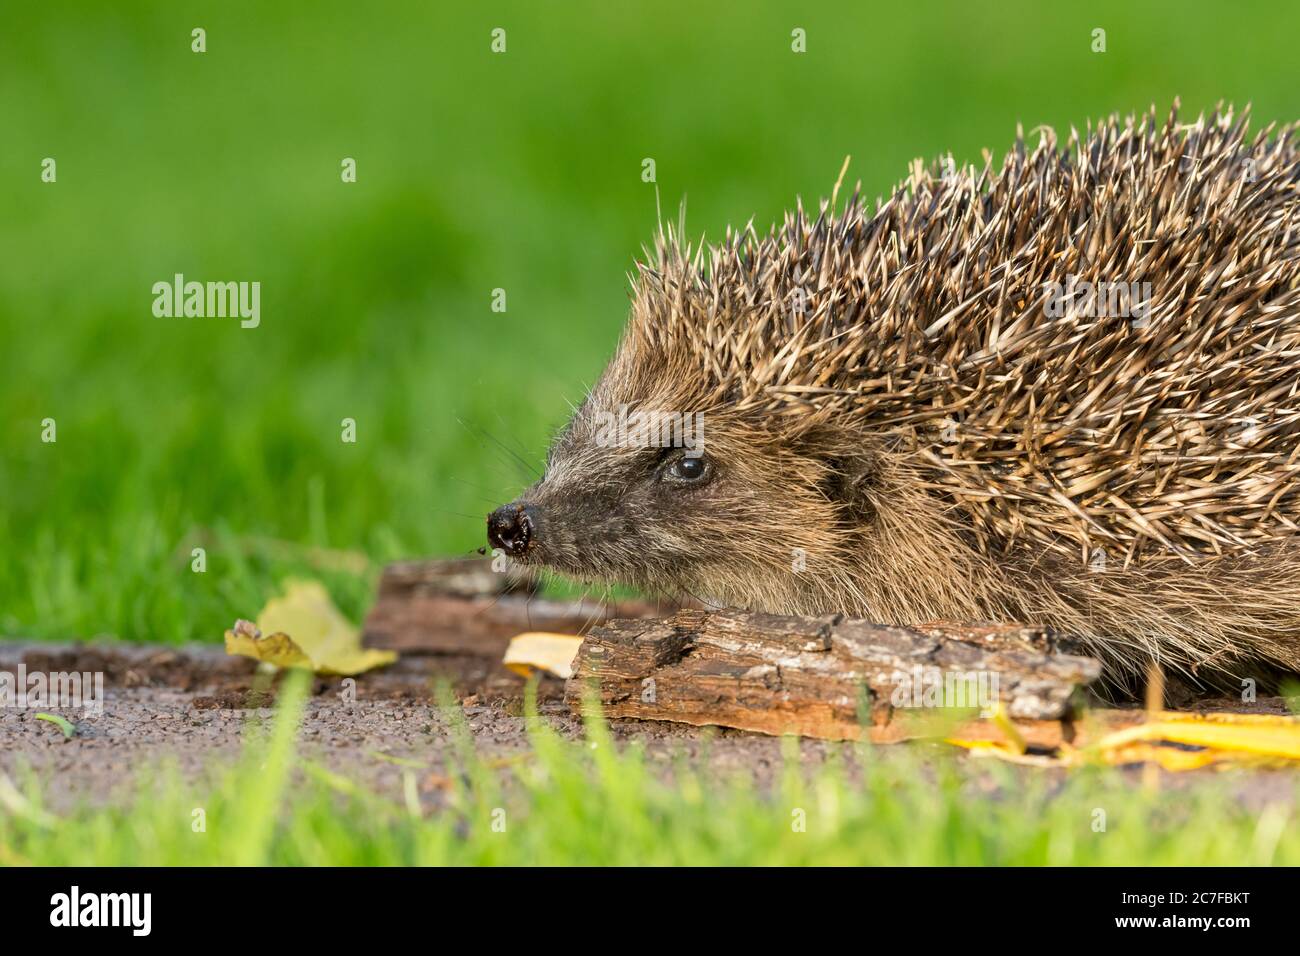 Hedgehog (nombre científico o latino: Erinaceus europaeus) primer plano de la cabeza y los hombros de un hedgehog salvaje, nativo, europeo, mirando hacia la izquierda. Foto de stock